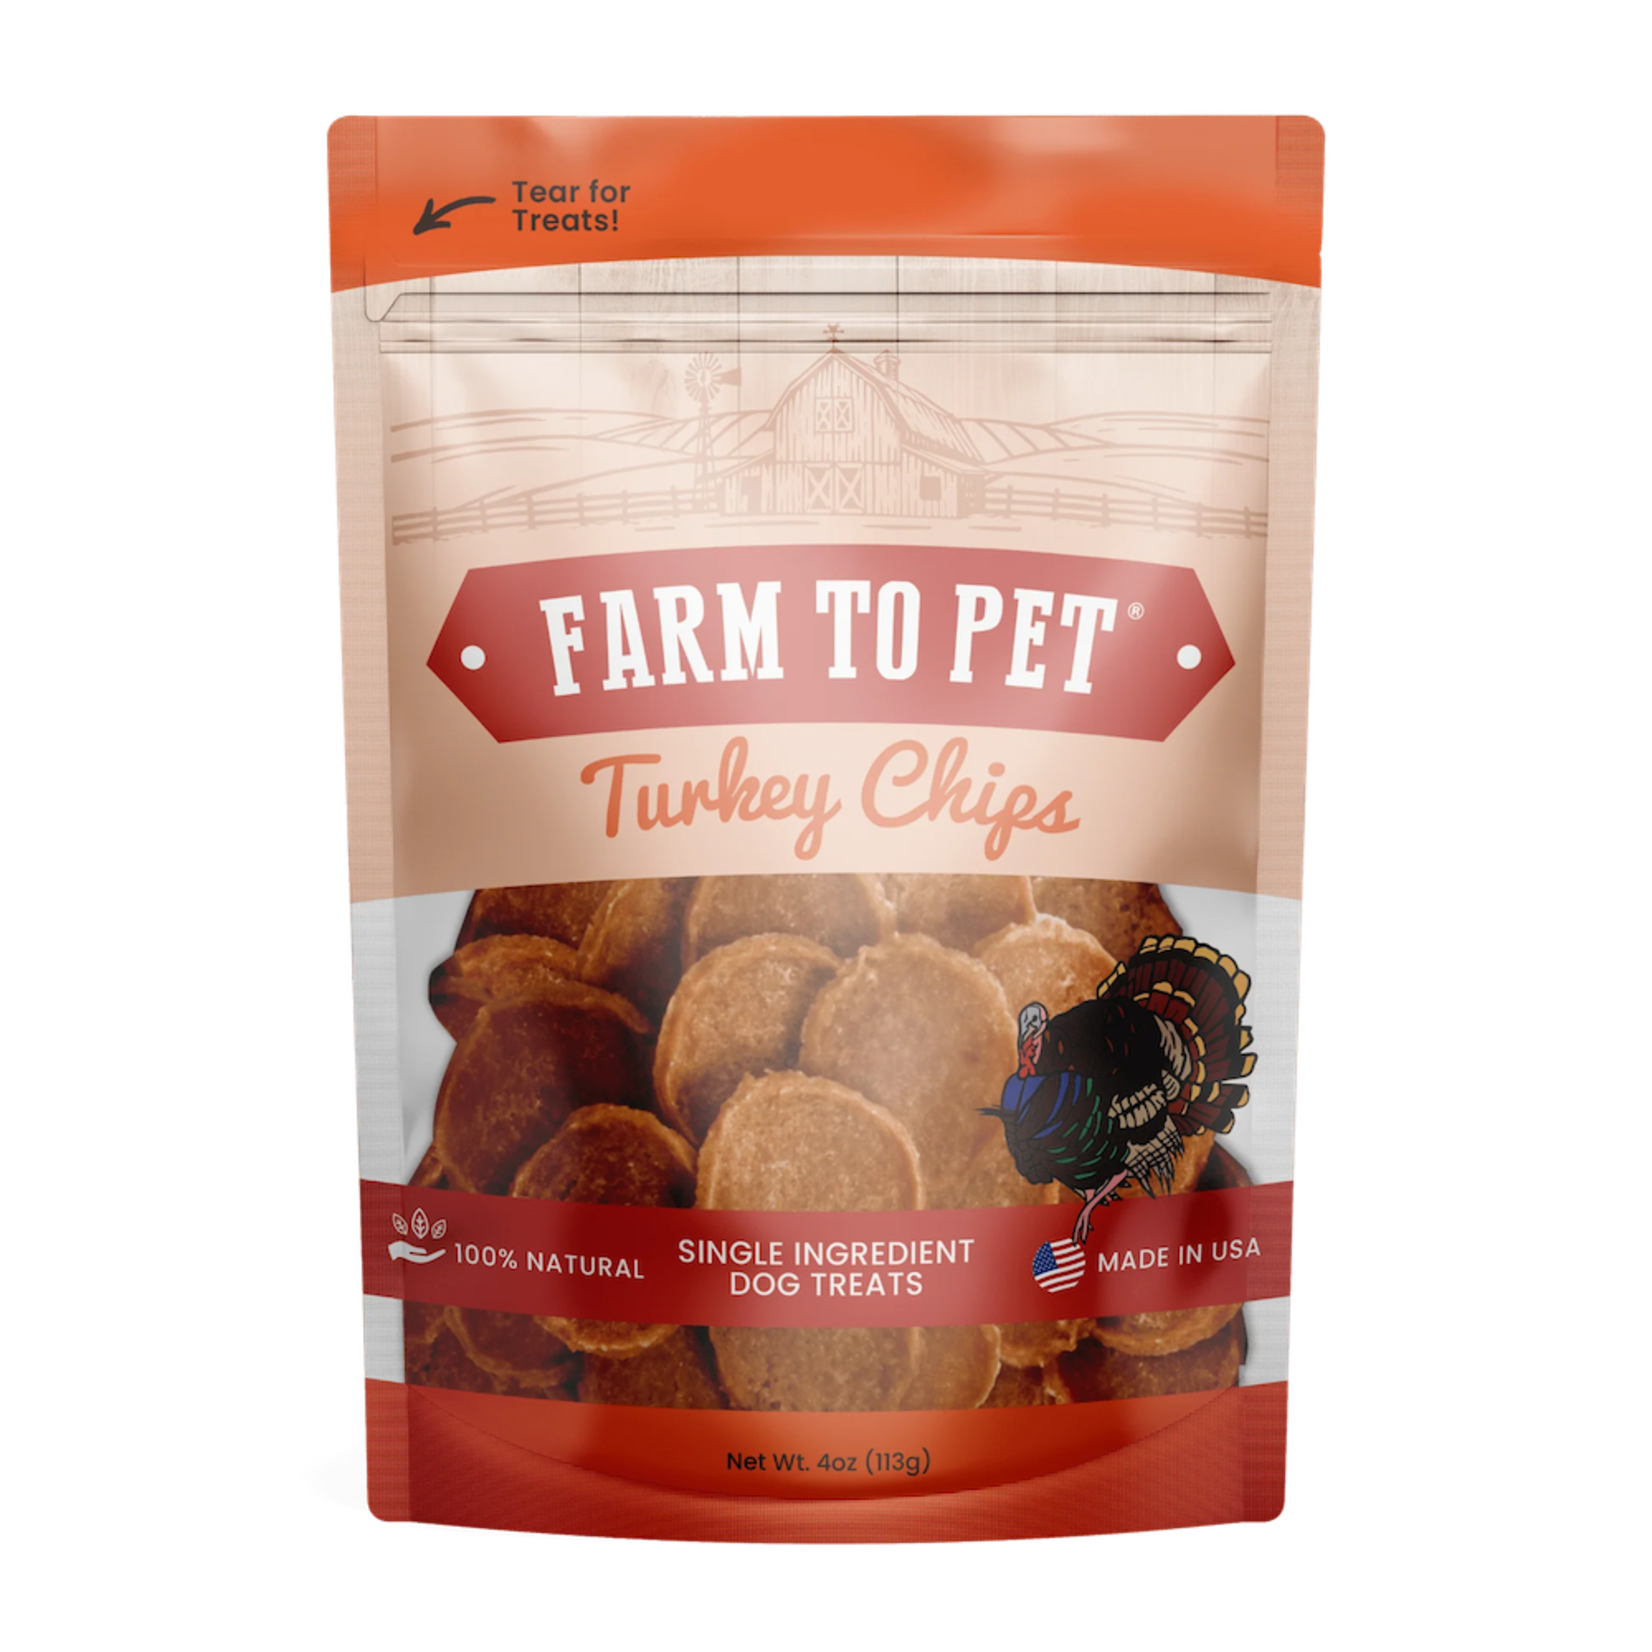 Farm to Pet Farm to Pet Turkey Chips Dog Treats